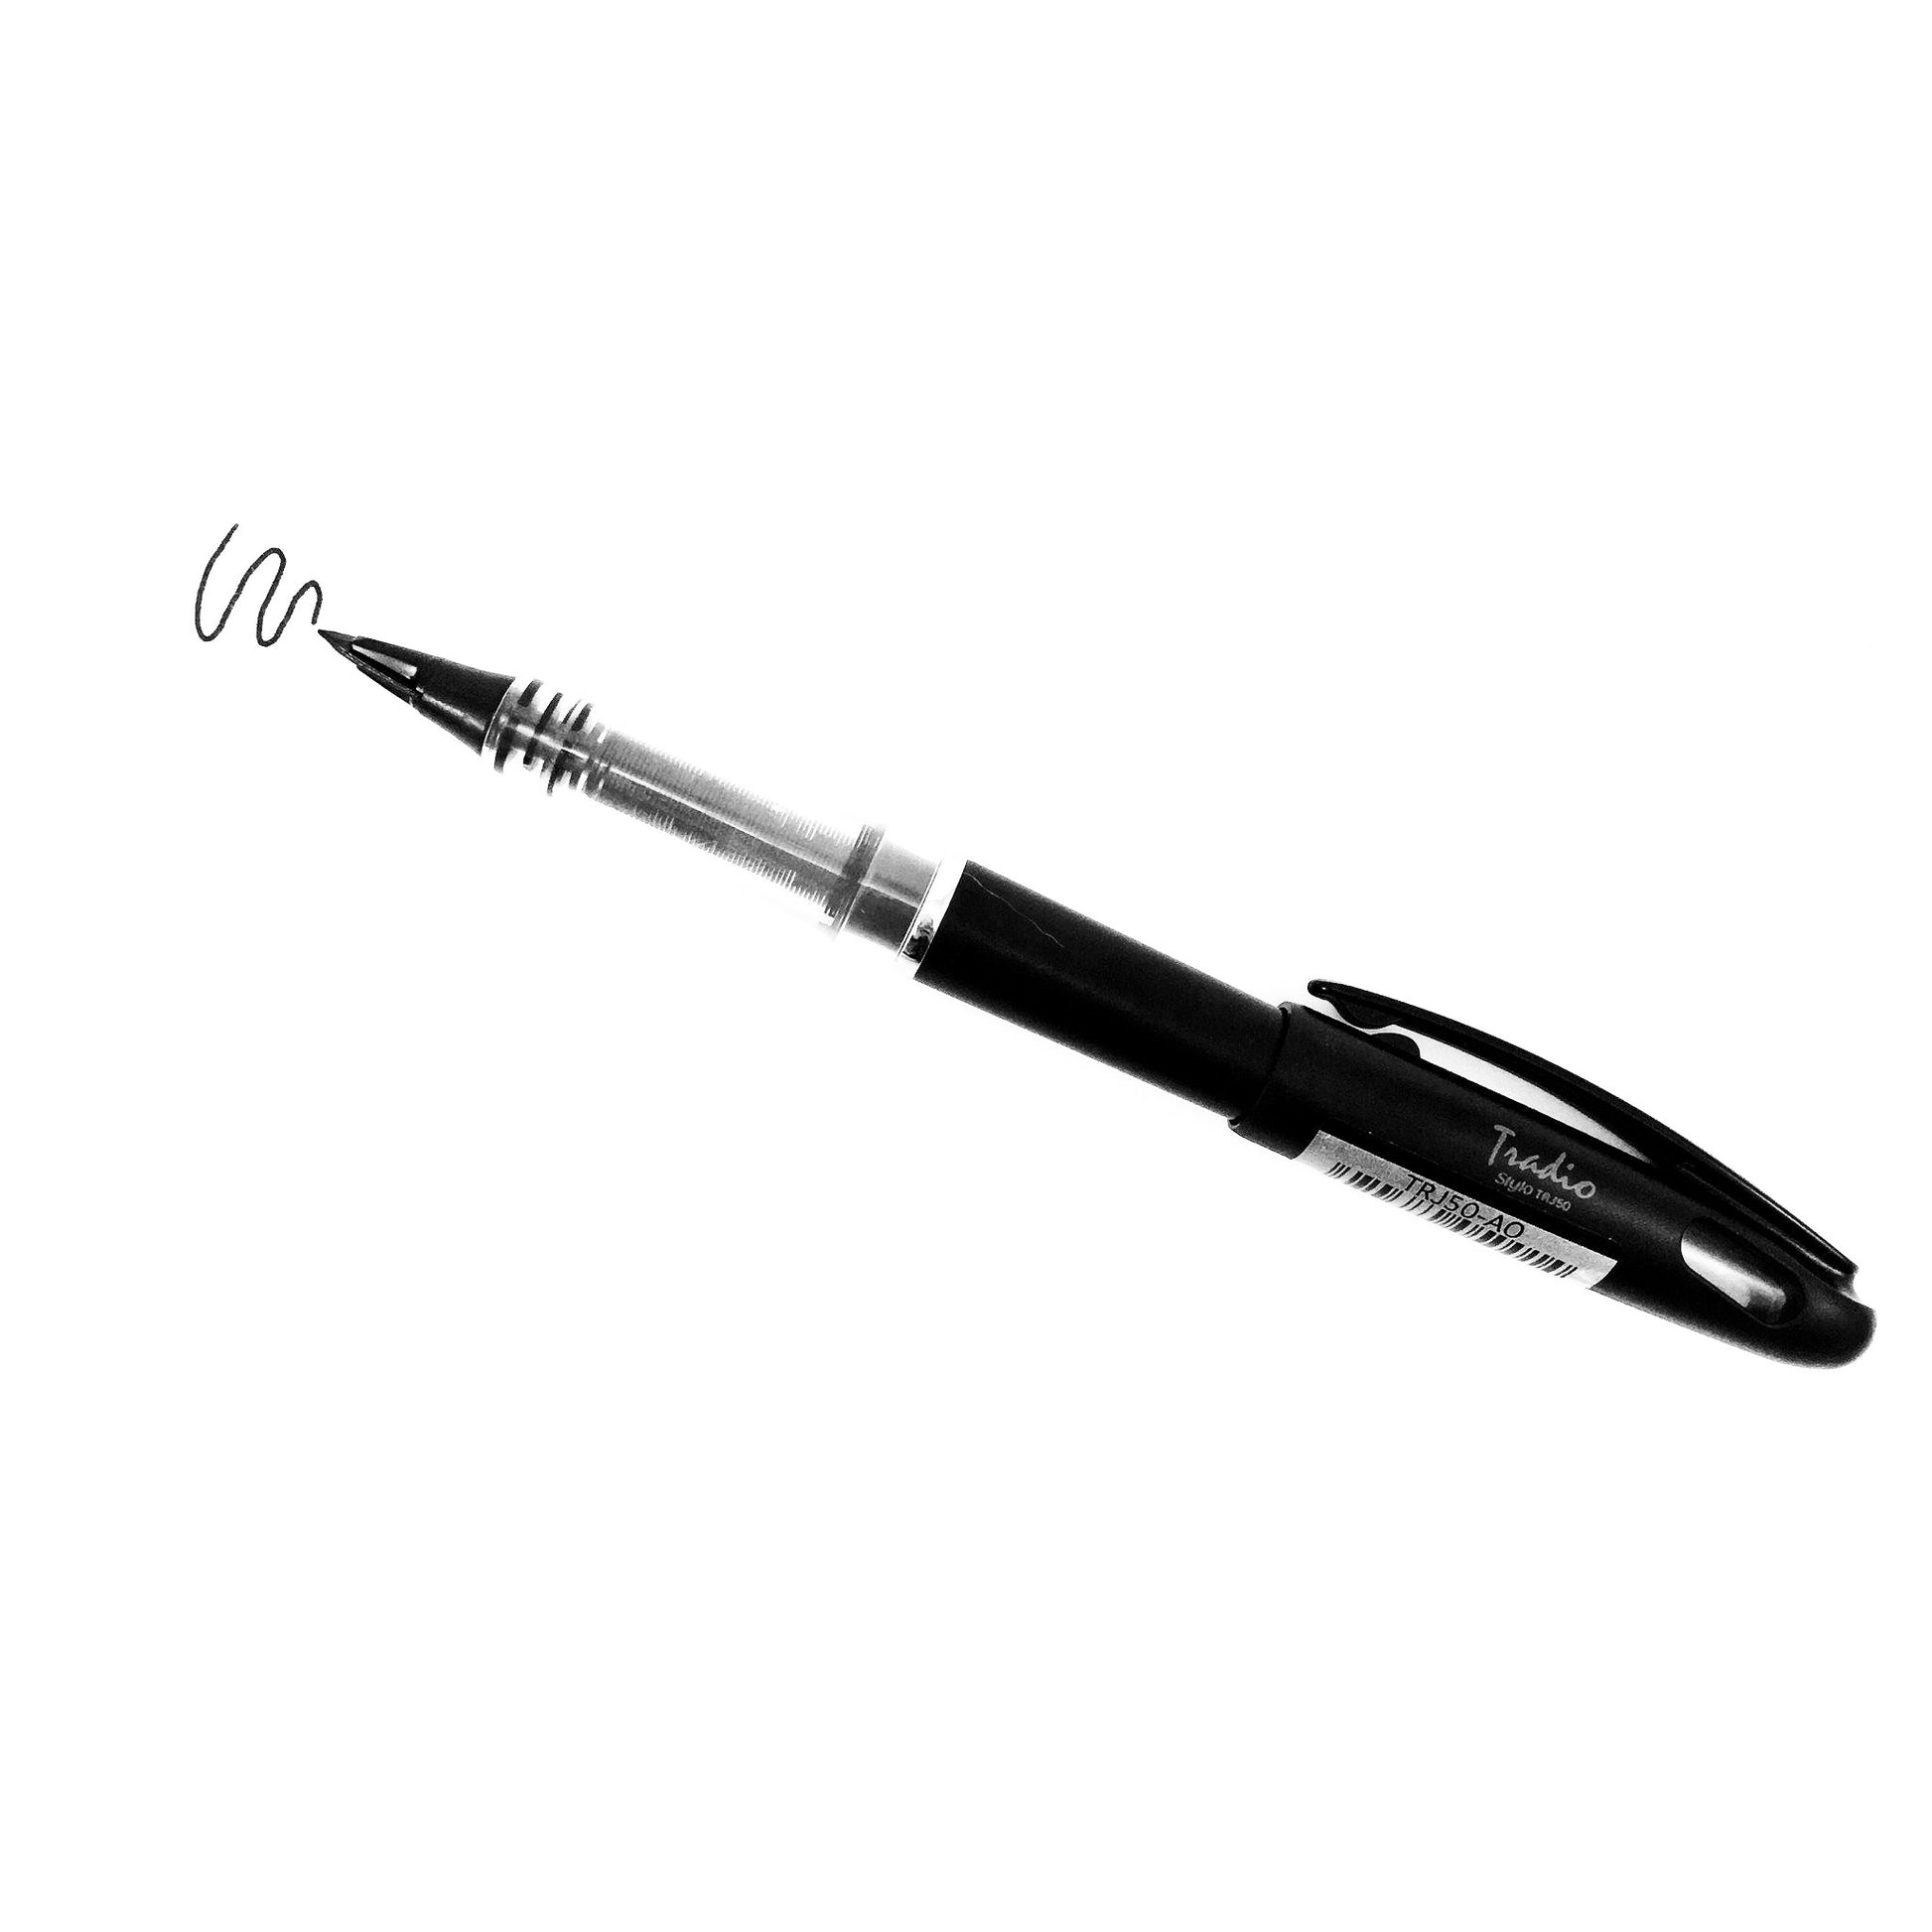 Pentel Stylo Sketch Pen Black